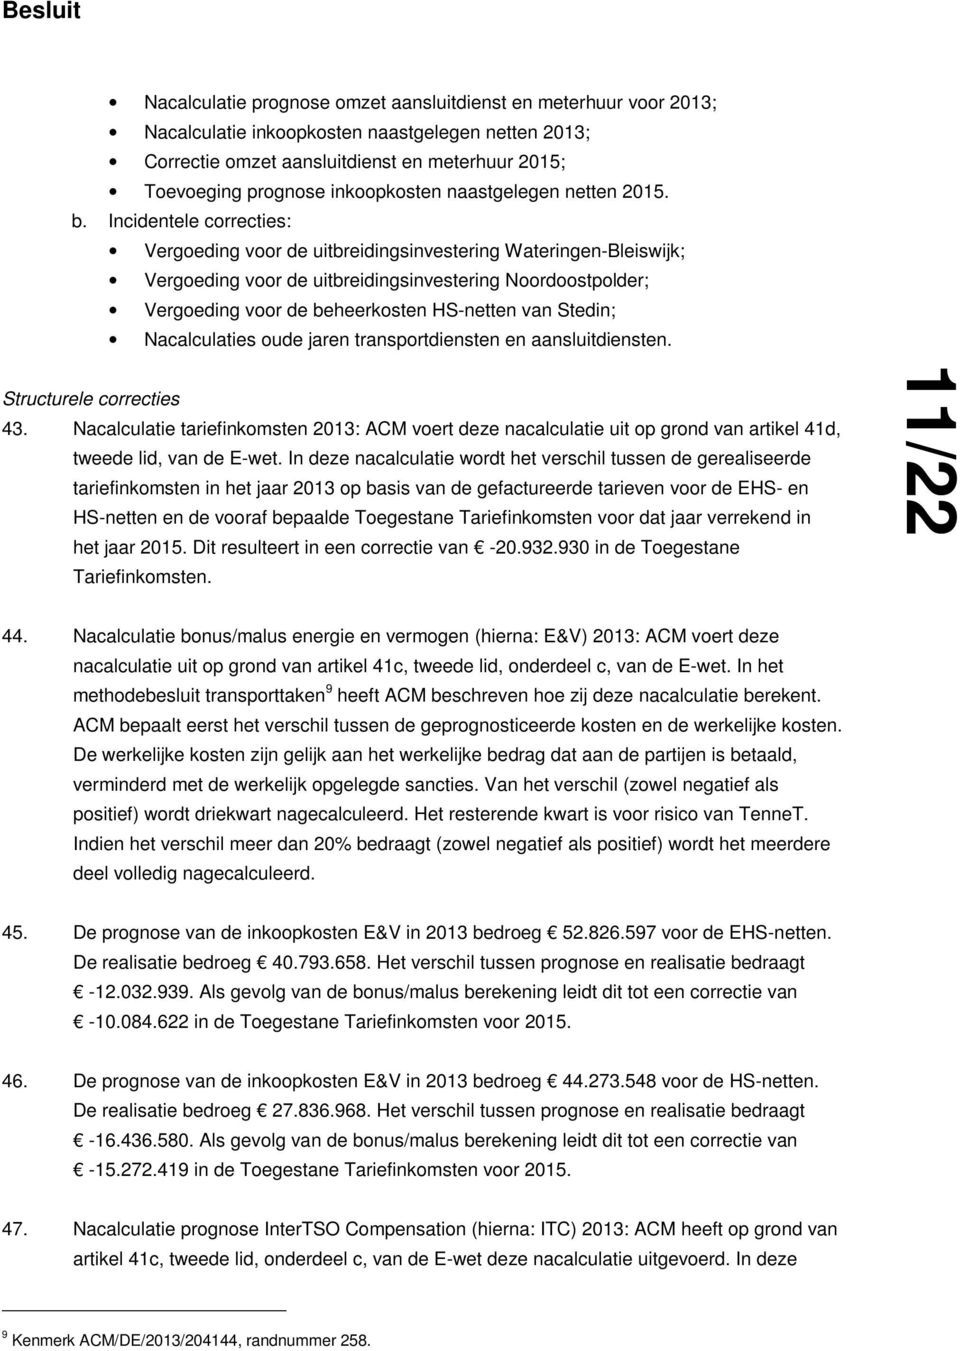 Incidentele correcties: Vergoeding voor de uitbreidingsinvestering Wateringen-Bleiswijk; Vergoeding voor de uitbreidingsinvestering Noordoostpolder; Vergoeding voor de beheerkosten HS-netten van